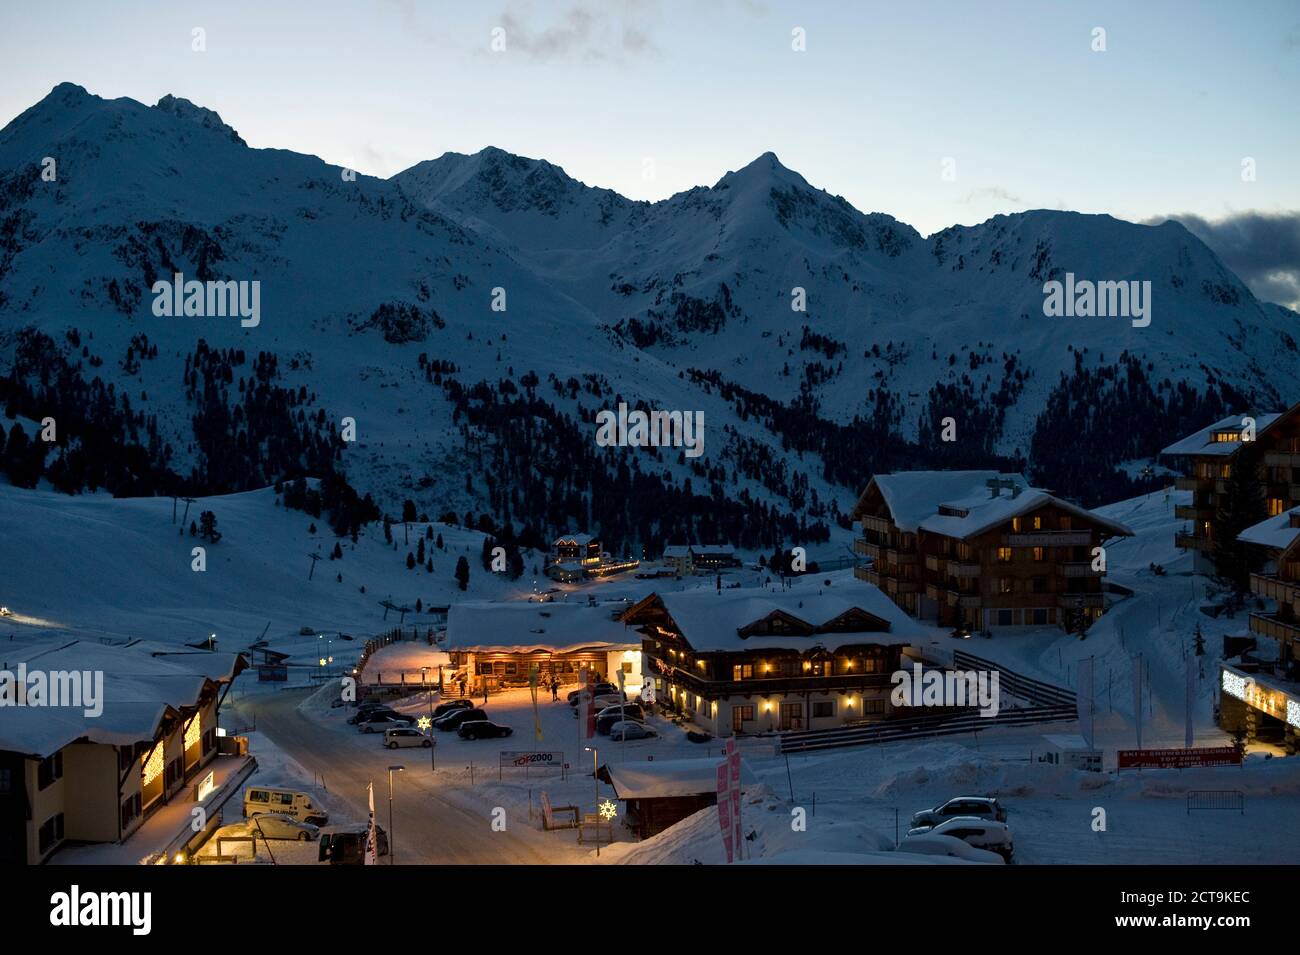 Austria, Tyrol, Kuehtai in the Winter, Stubaier Alps, near Imst Stock Photo